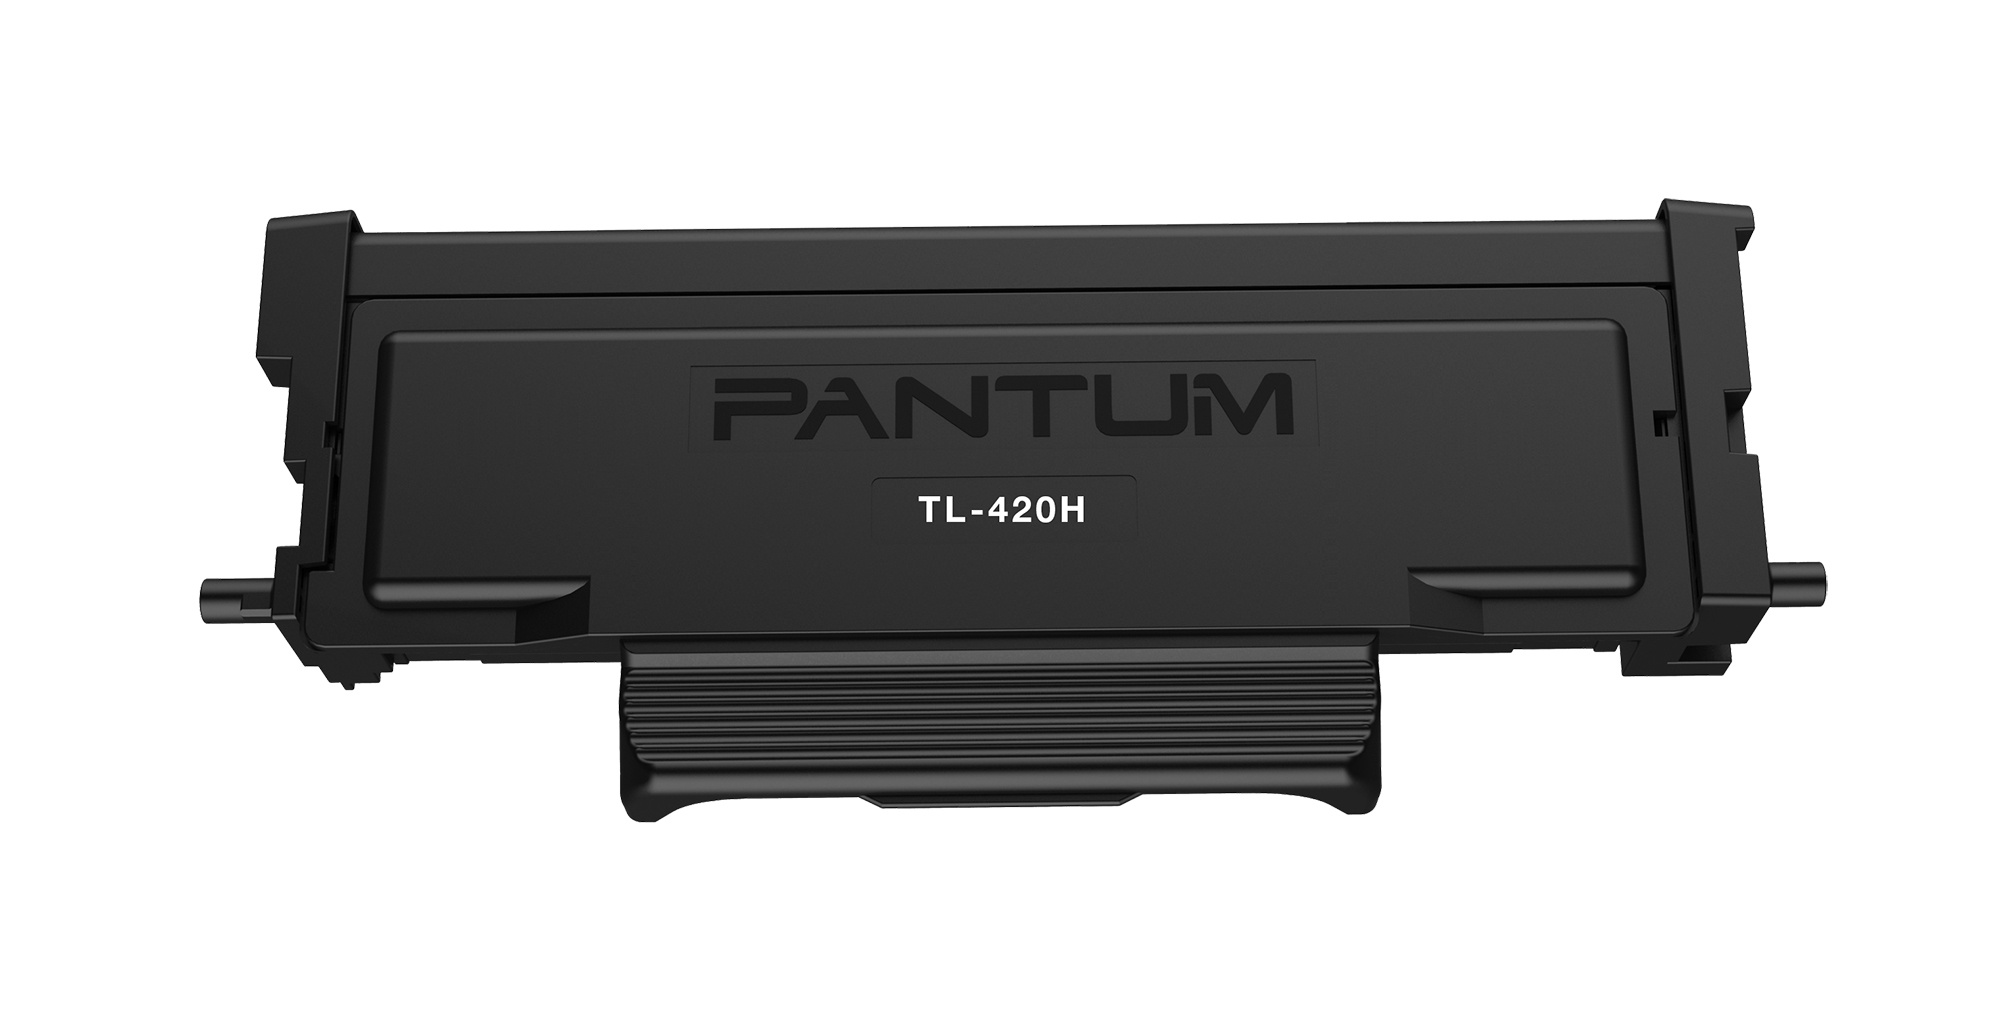 Картридж Pantum TL-420H